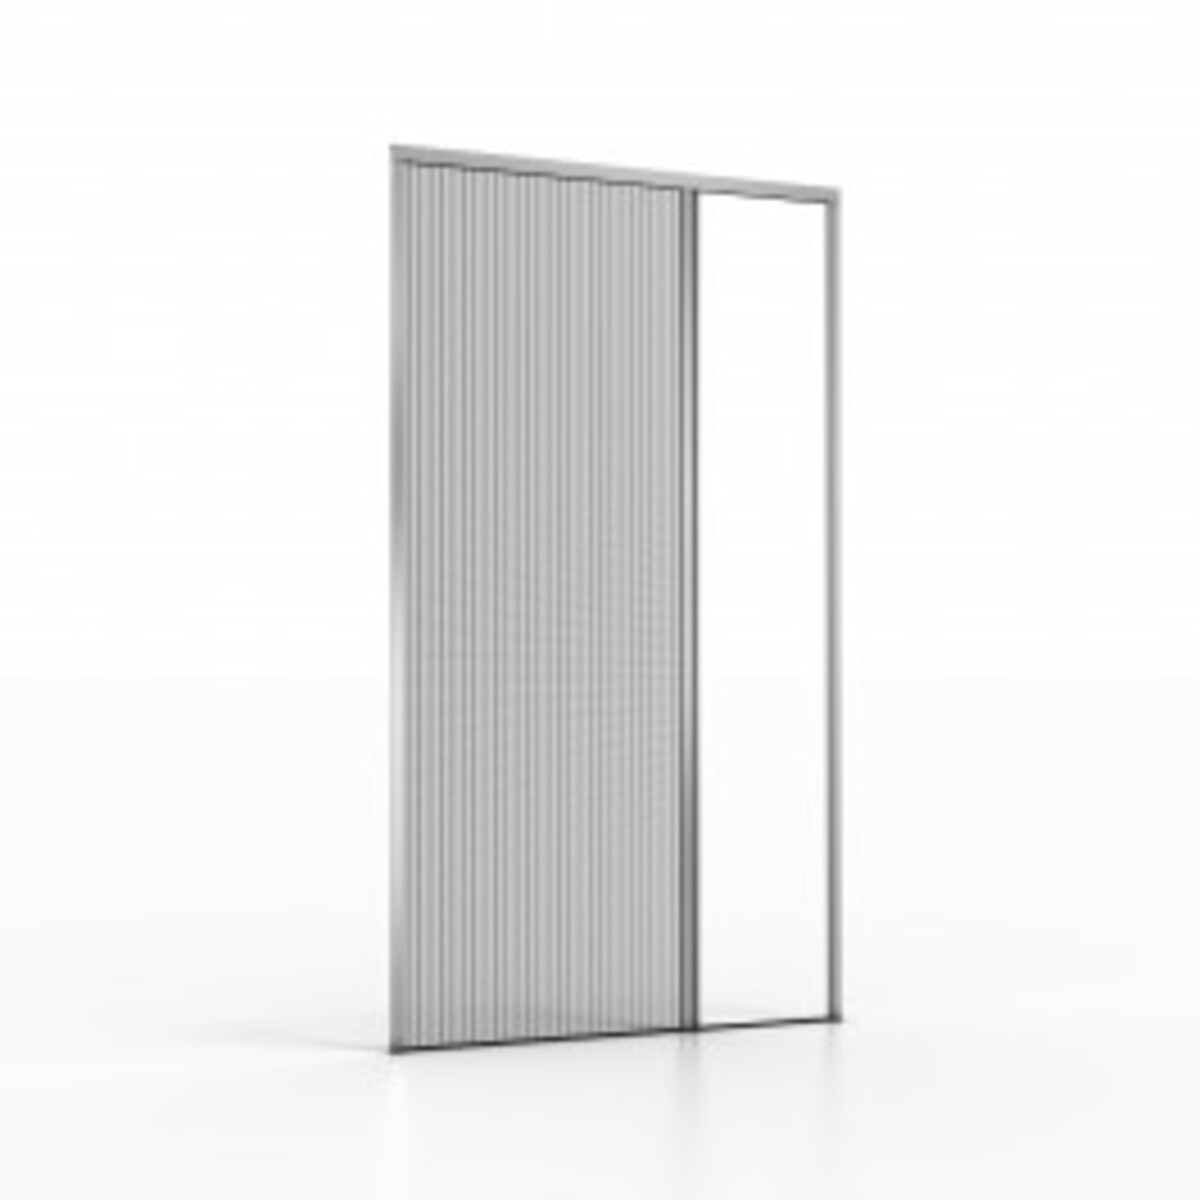 Moustiquaire pour portes et fenêtres Platinum.05 1000 x 1600 Blanc Grinz 2 Vantaux Plissée